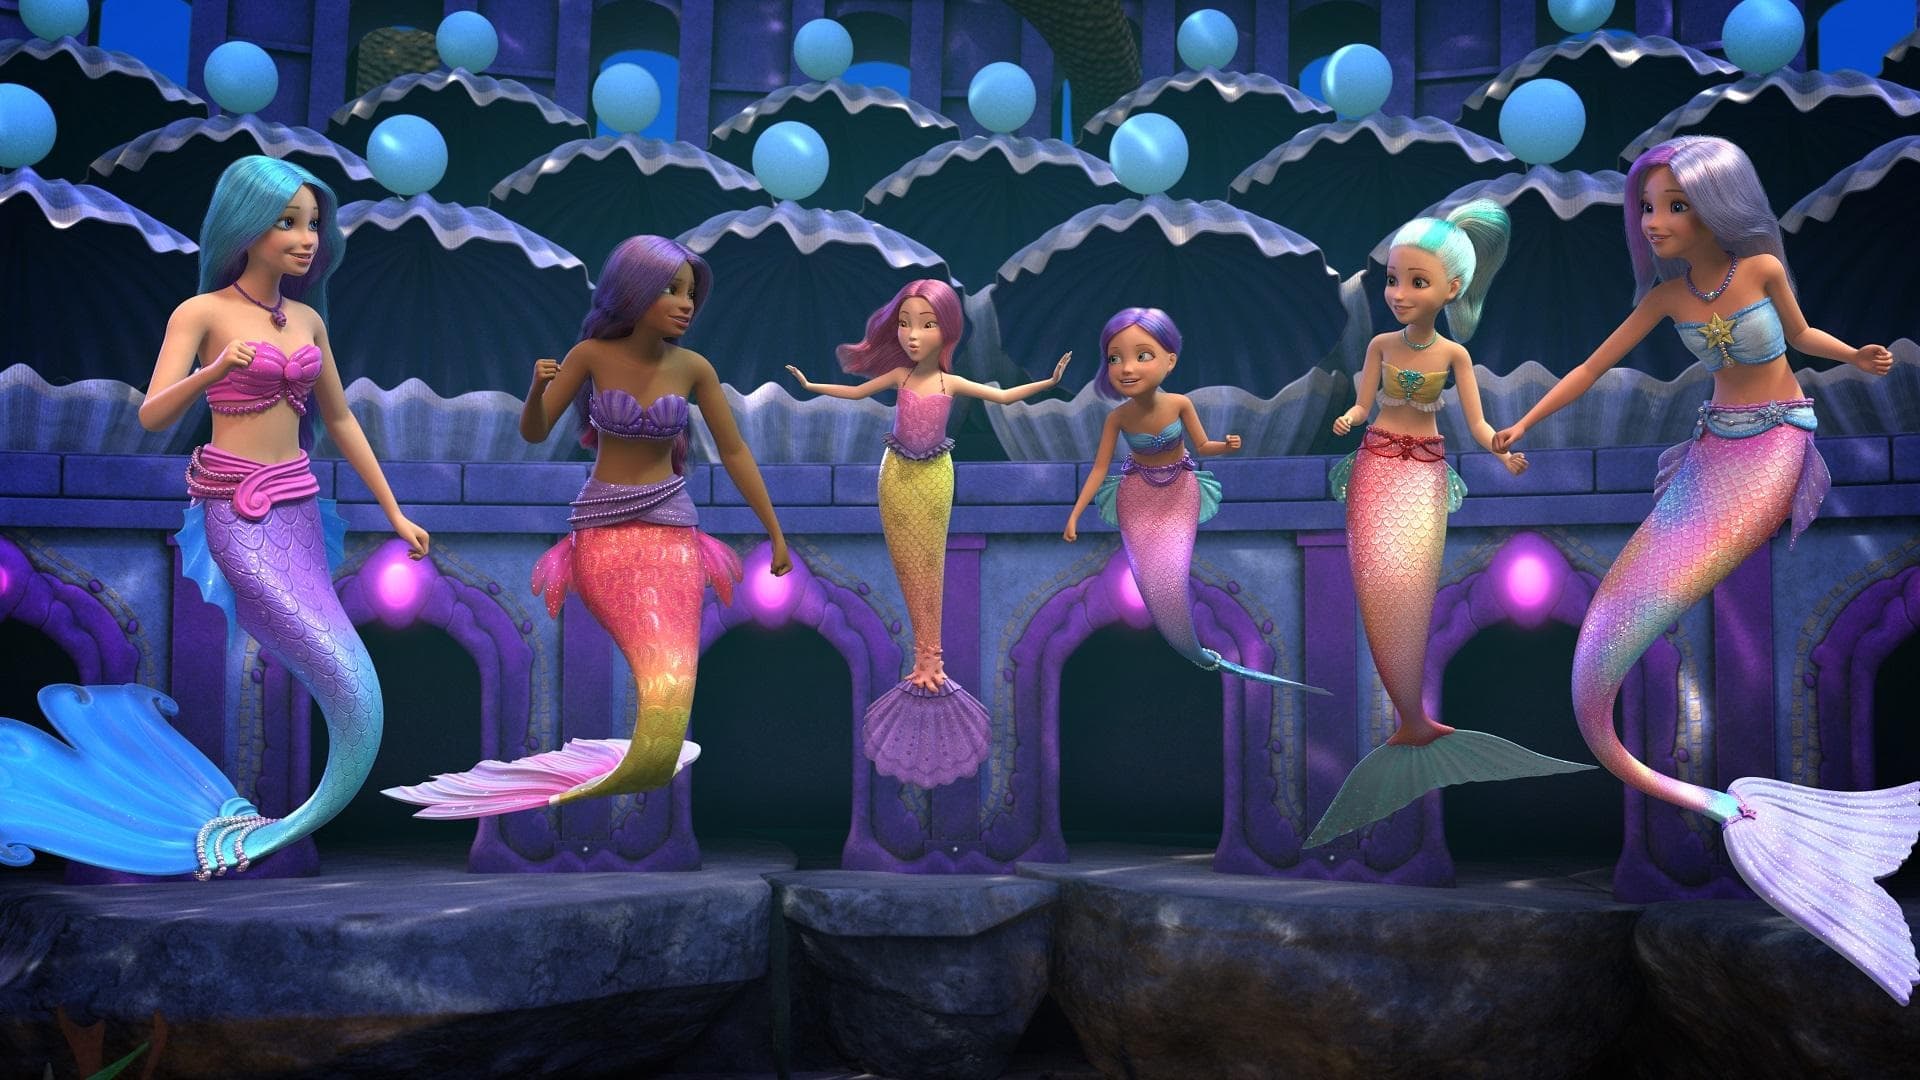 Barbie: Mermaid Power (2022) บาร์บี้: พลังนางเงือก